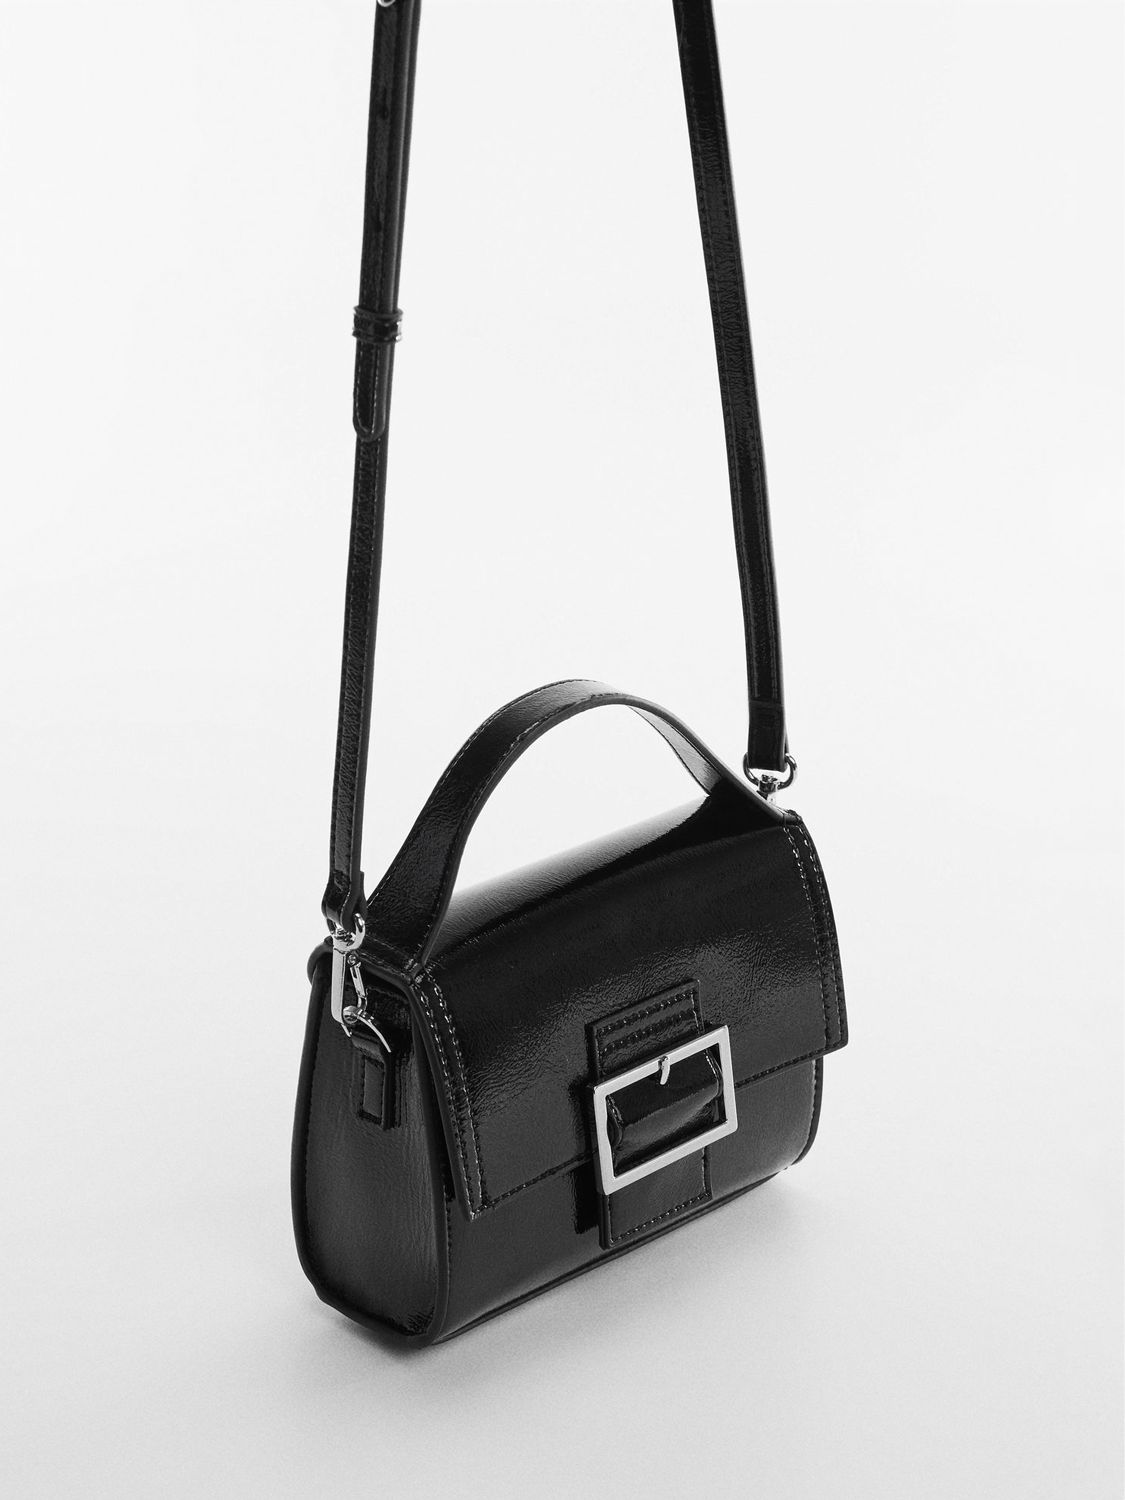 DKNY Carol Pouchette Logo Large Cross Body Bag, Black